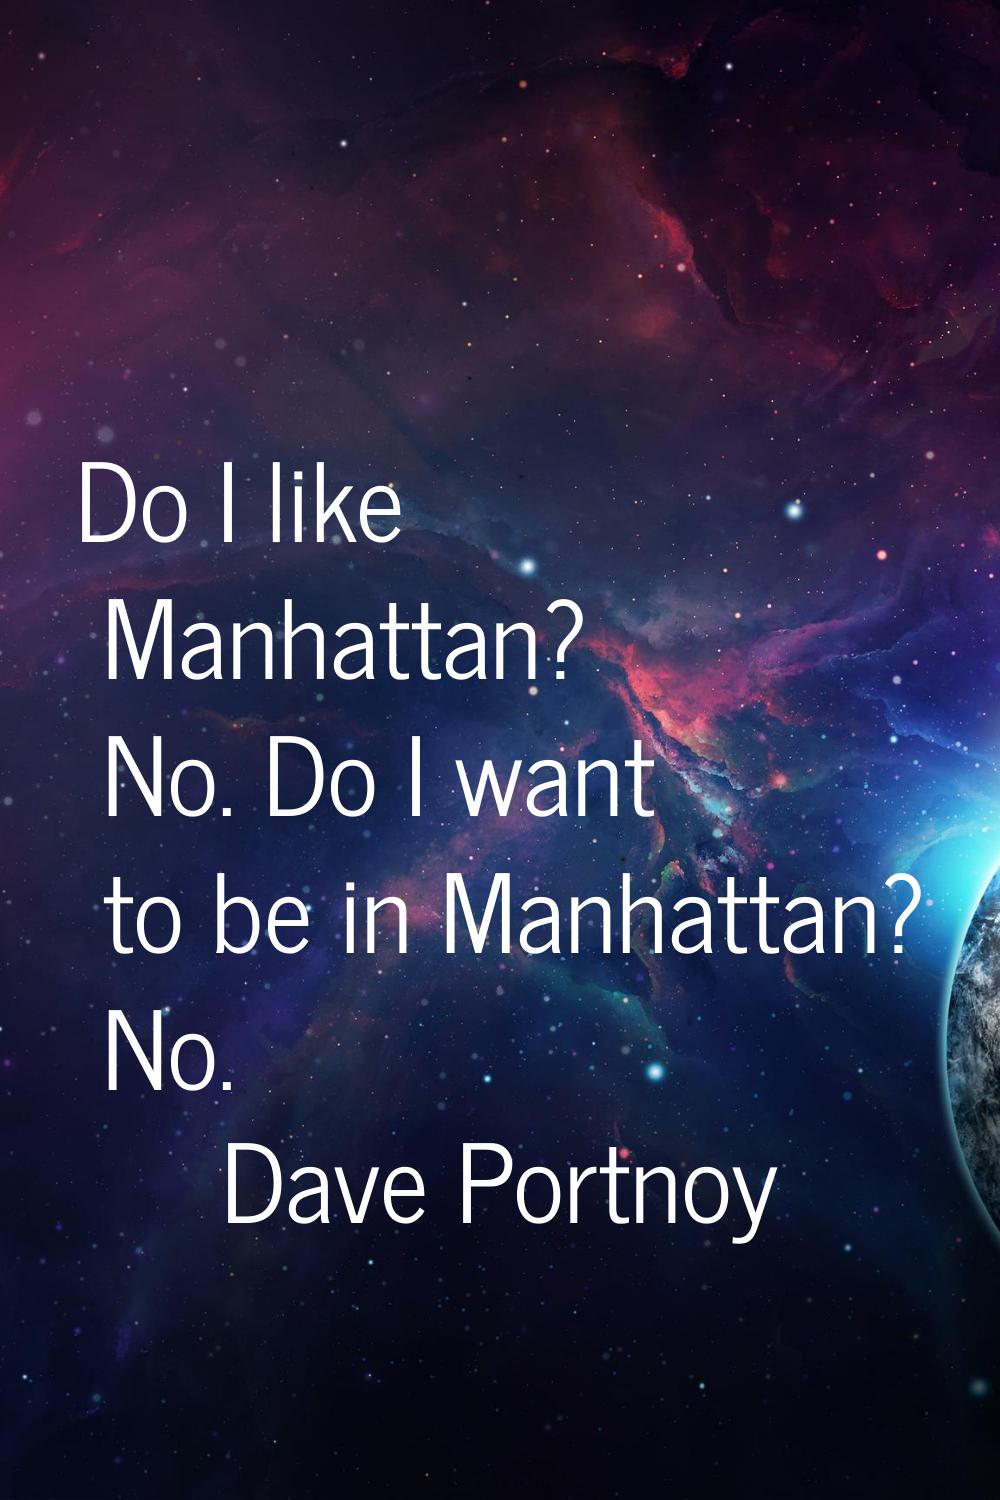 Do I like Manhattan? No. Do I want to be in Manhattan? No.